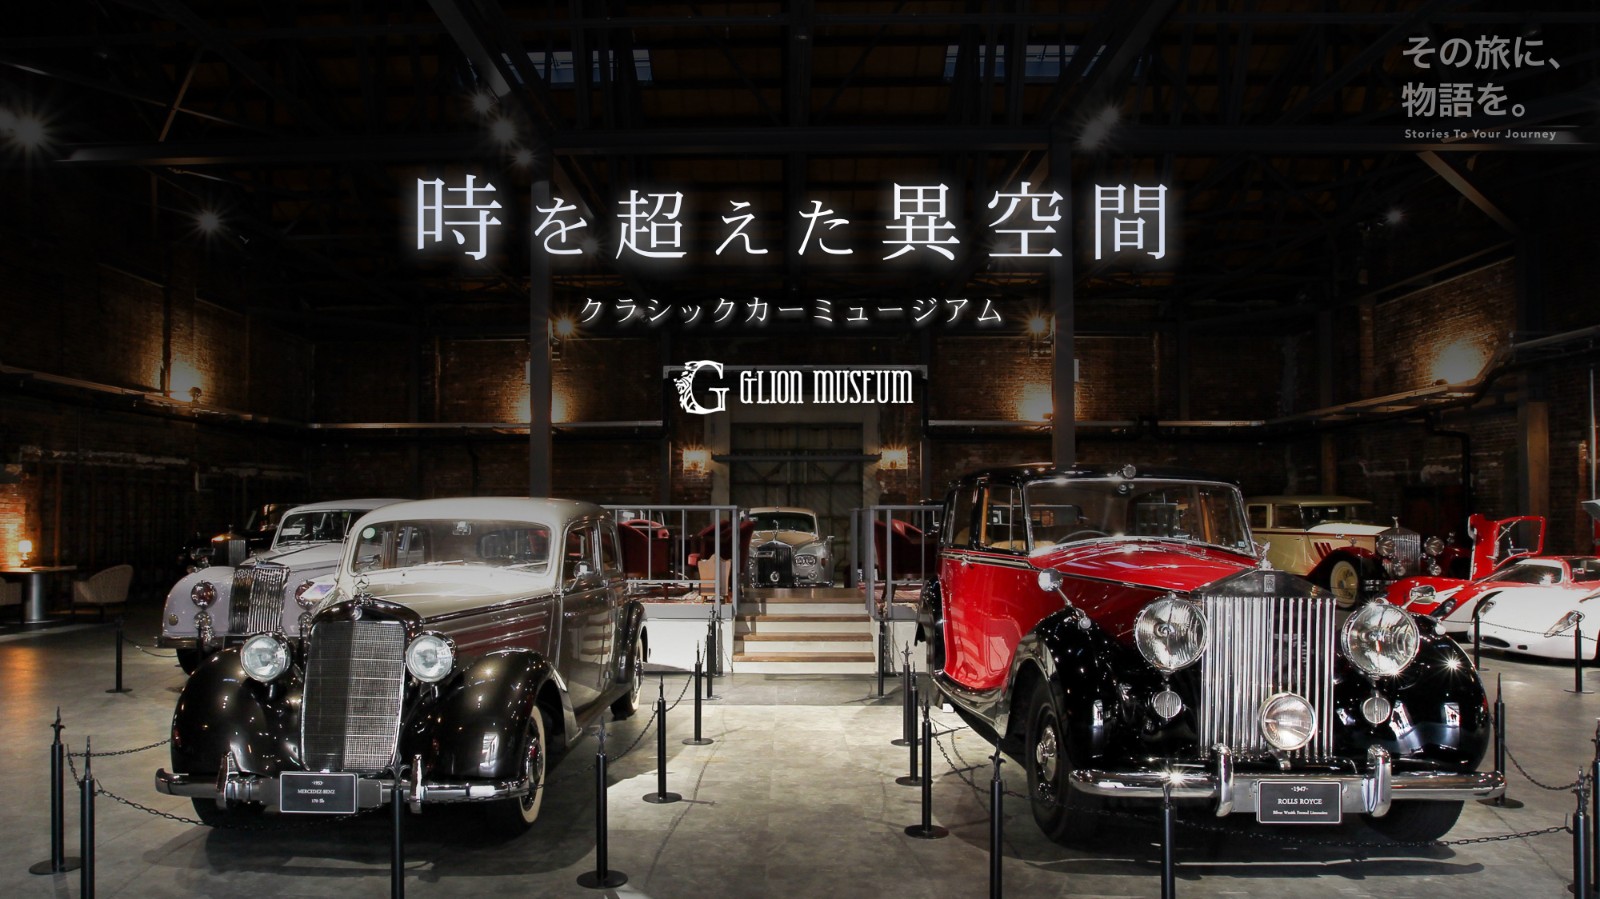 時を超えた世界中の名車が集結 クラシックカー専門の博物館 Glion Museum でpokke導入 名車と旅する音声ガイド開始 Mebuku Inc